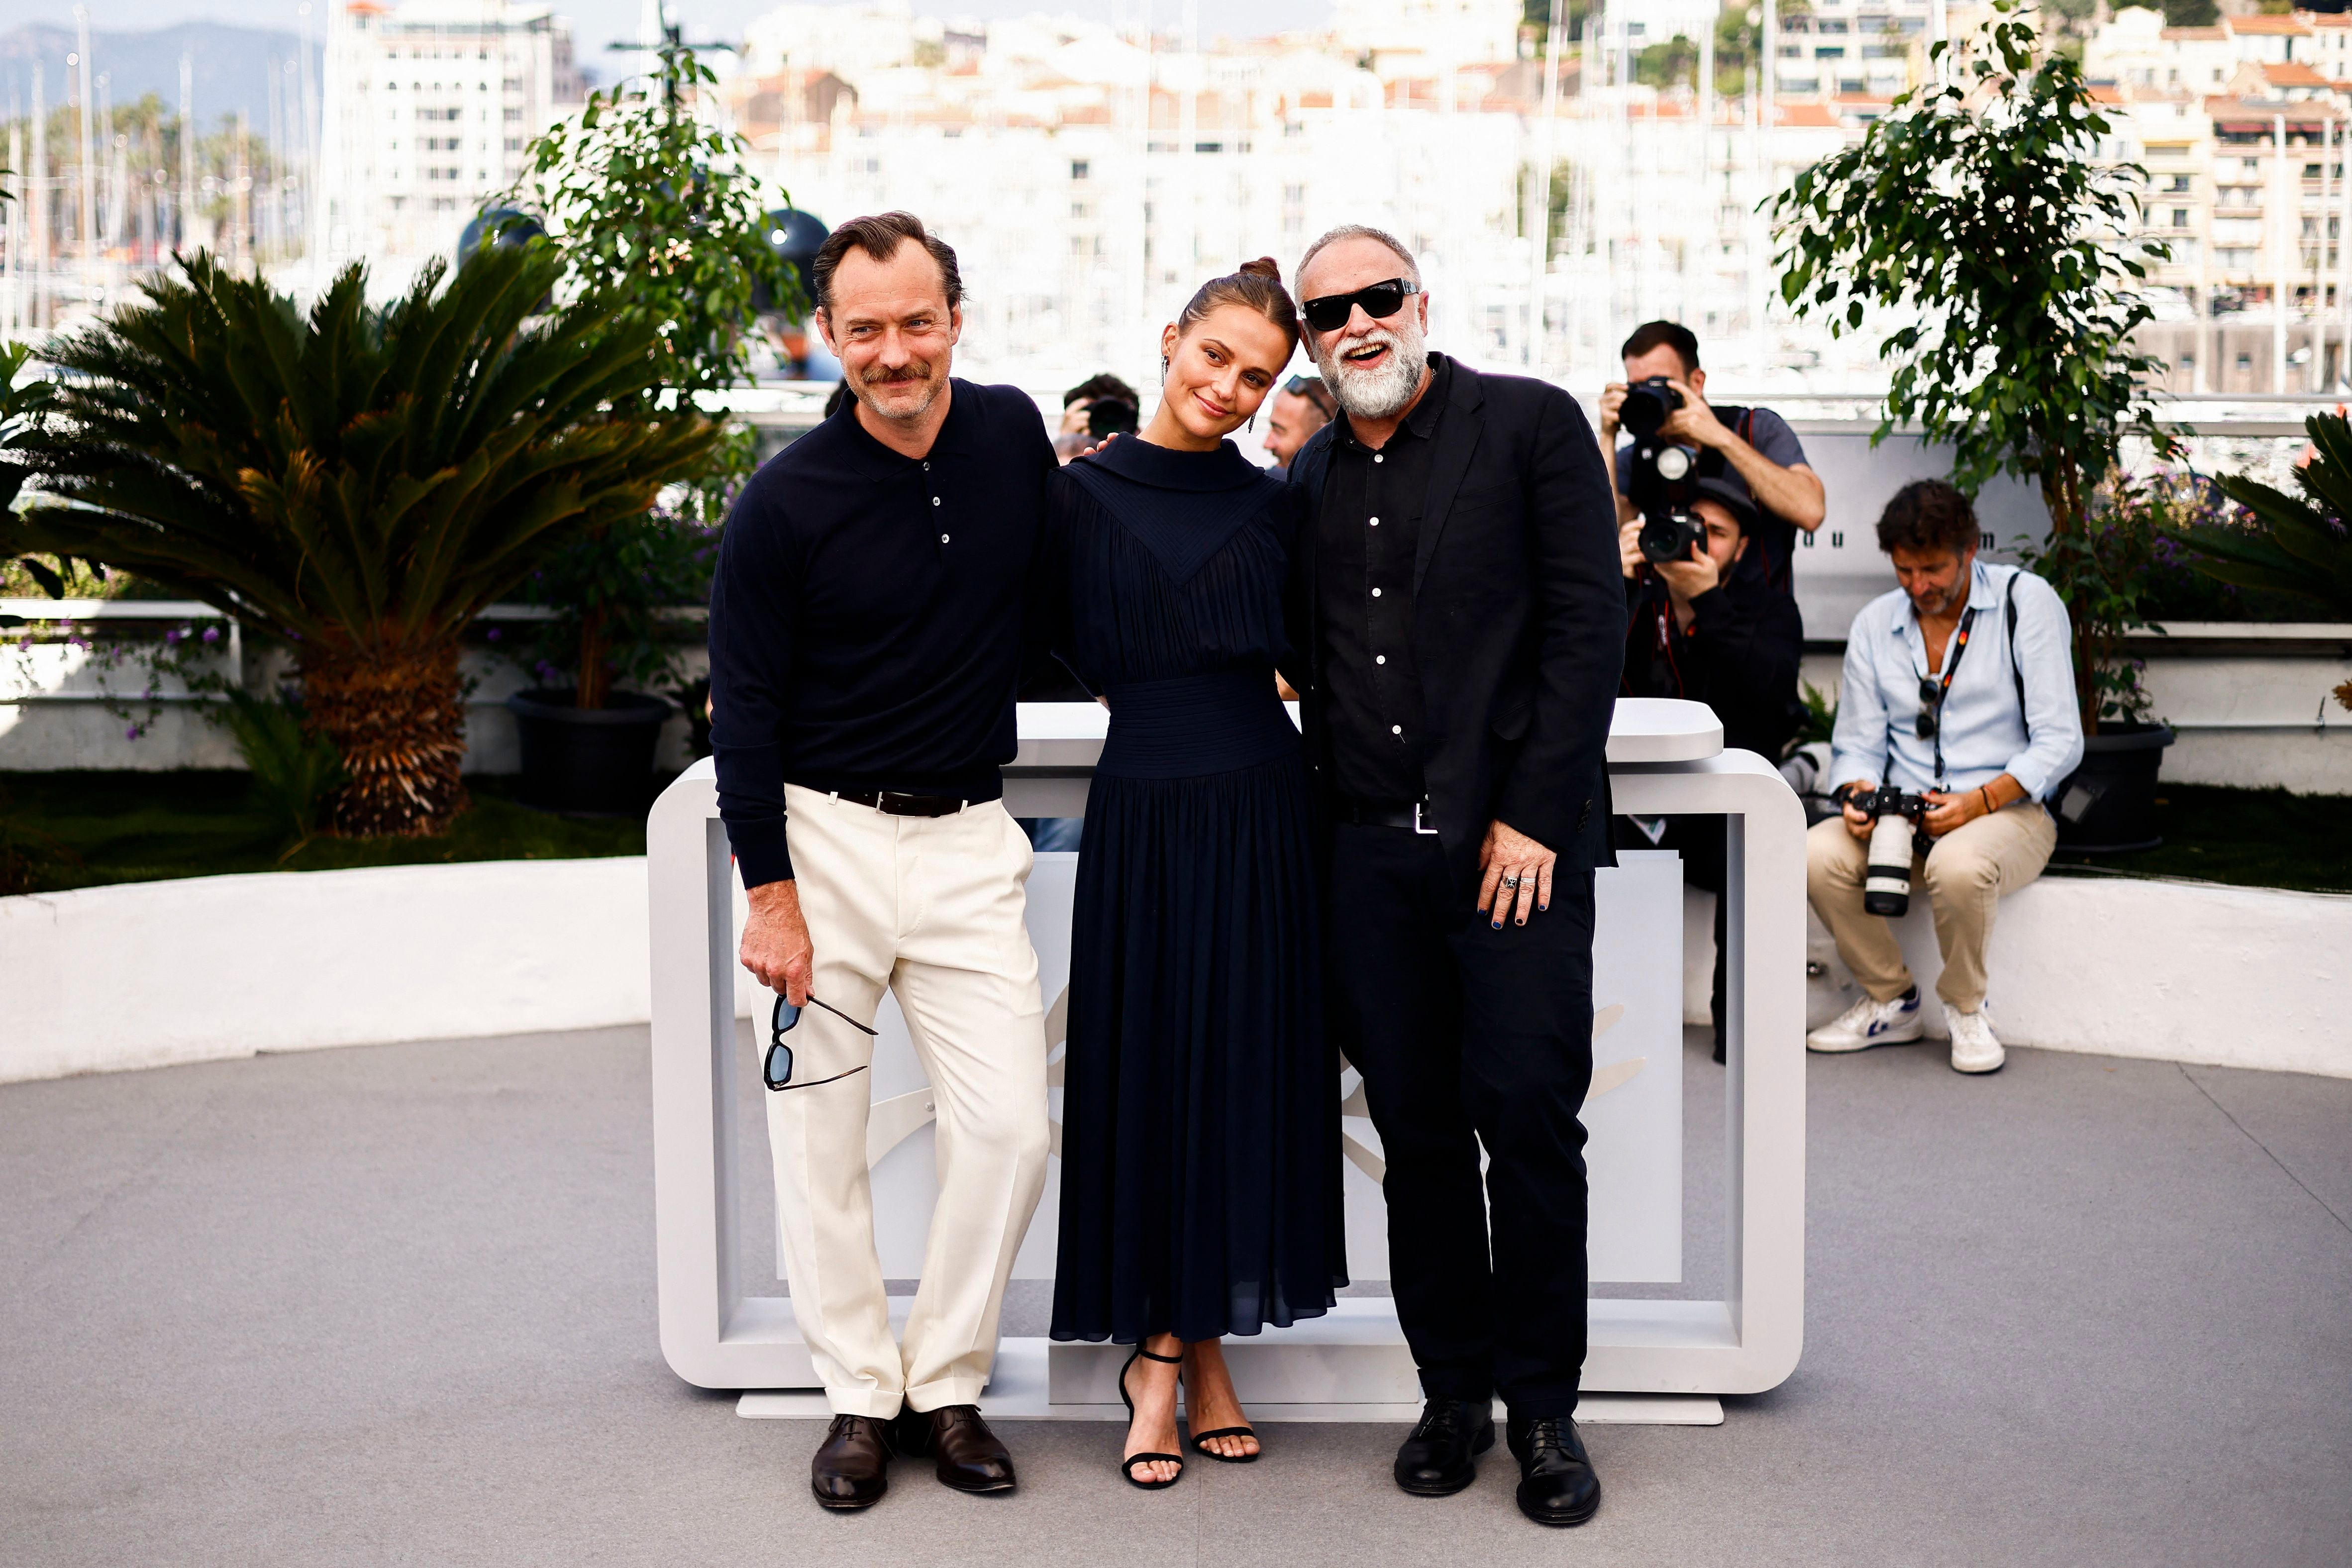 Firebrand fue todo un éxito en Cannes, consiguiendo una ovación de pie de 8 minutos
REUTERS/Yara Nardi